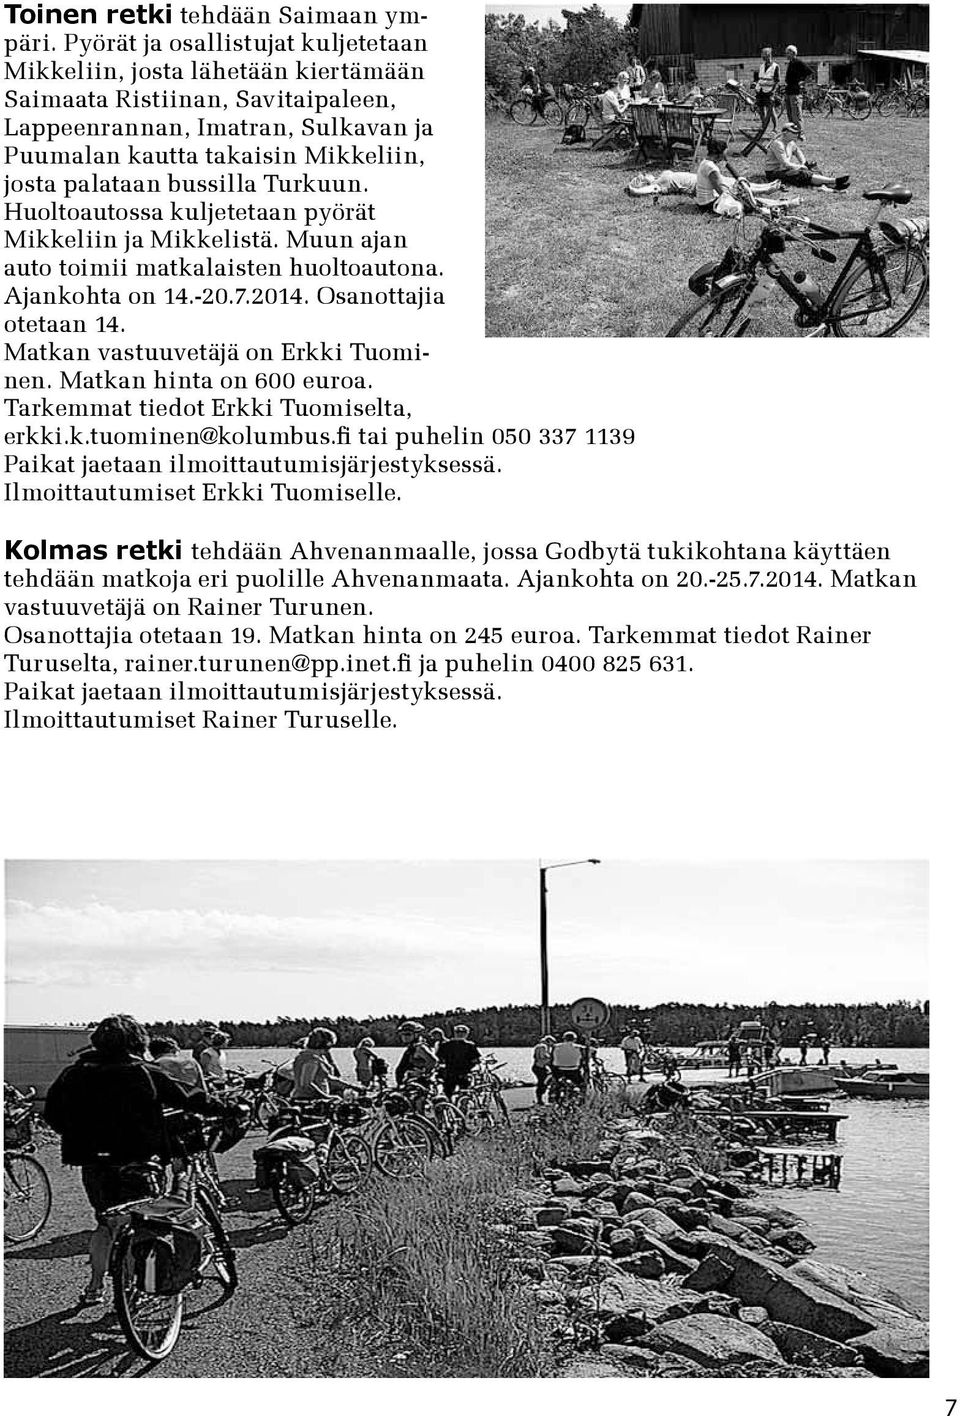 bussilla Turkuun. Huoltoautossa kuljetetaan pyörät Mikkeliin ja Mikkelistä. Muun ajan auto toimii matkalaisten huoltoautona. Ajankohta on 14.-20.7.2014. Osanottajia otetaan 14.